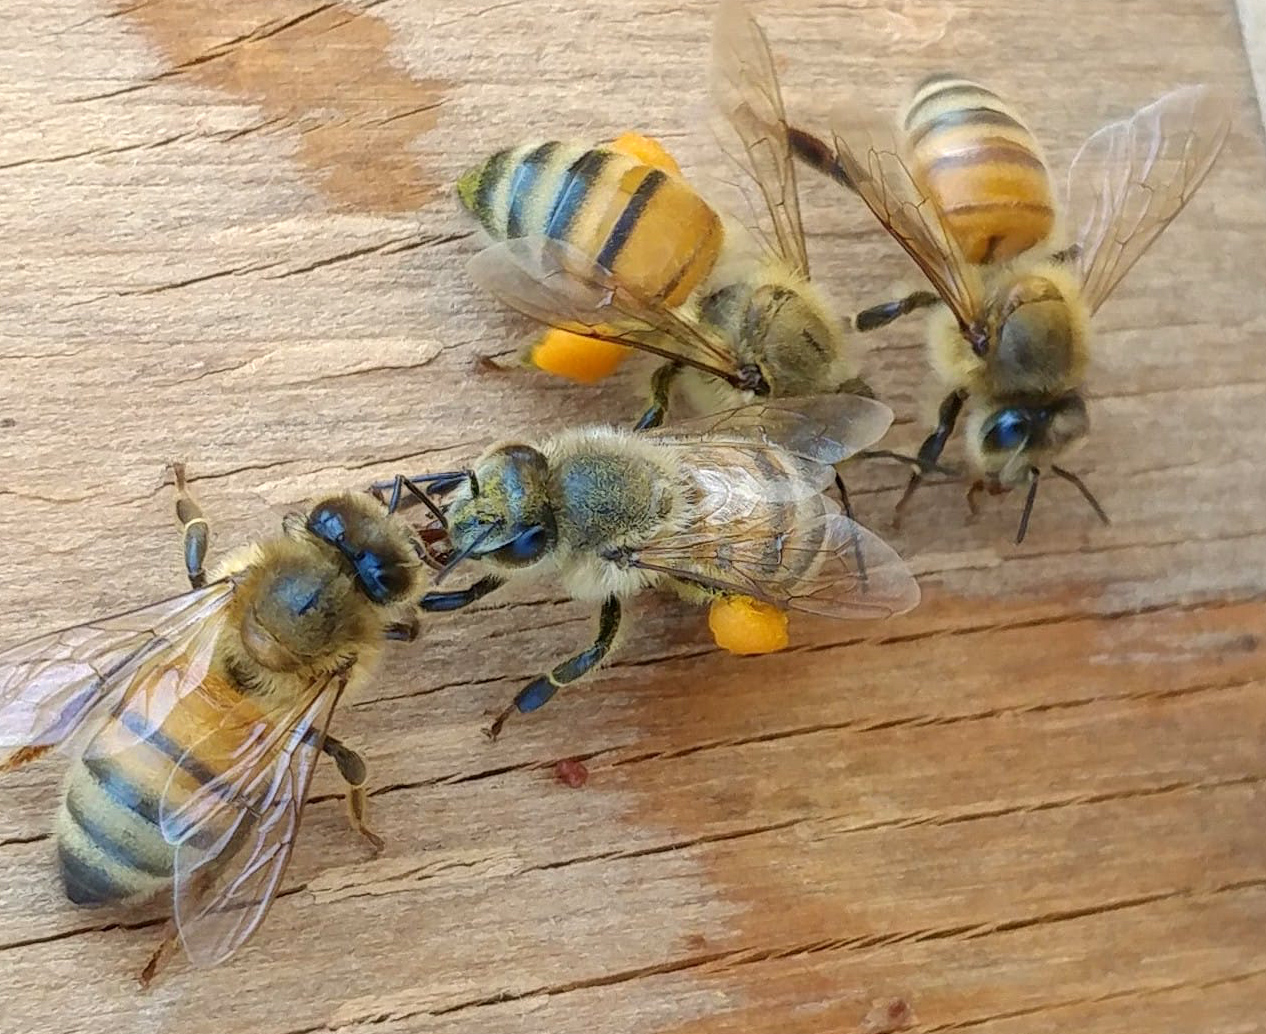 Honeybees with pollen on legs